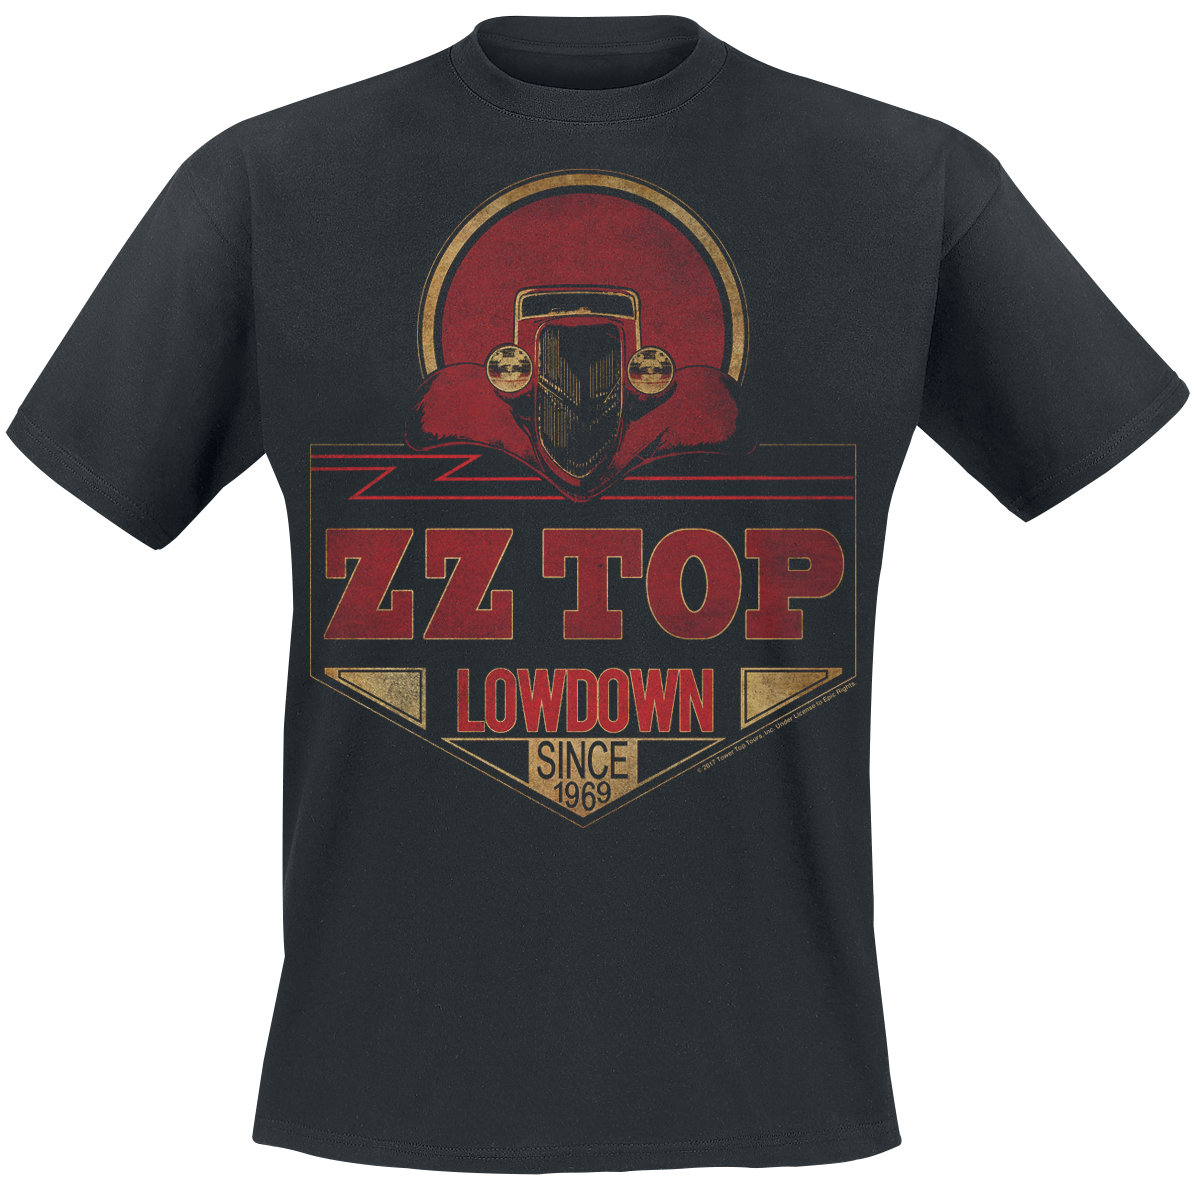 ZZ Top - Lowdown Since 1969 - T-Shirt - schwarz